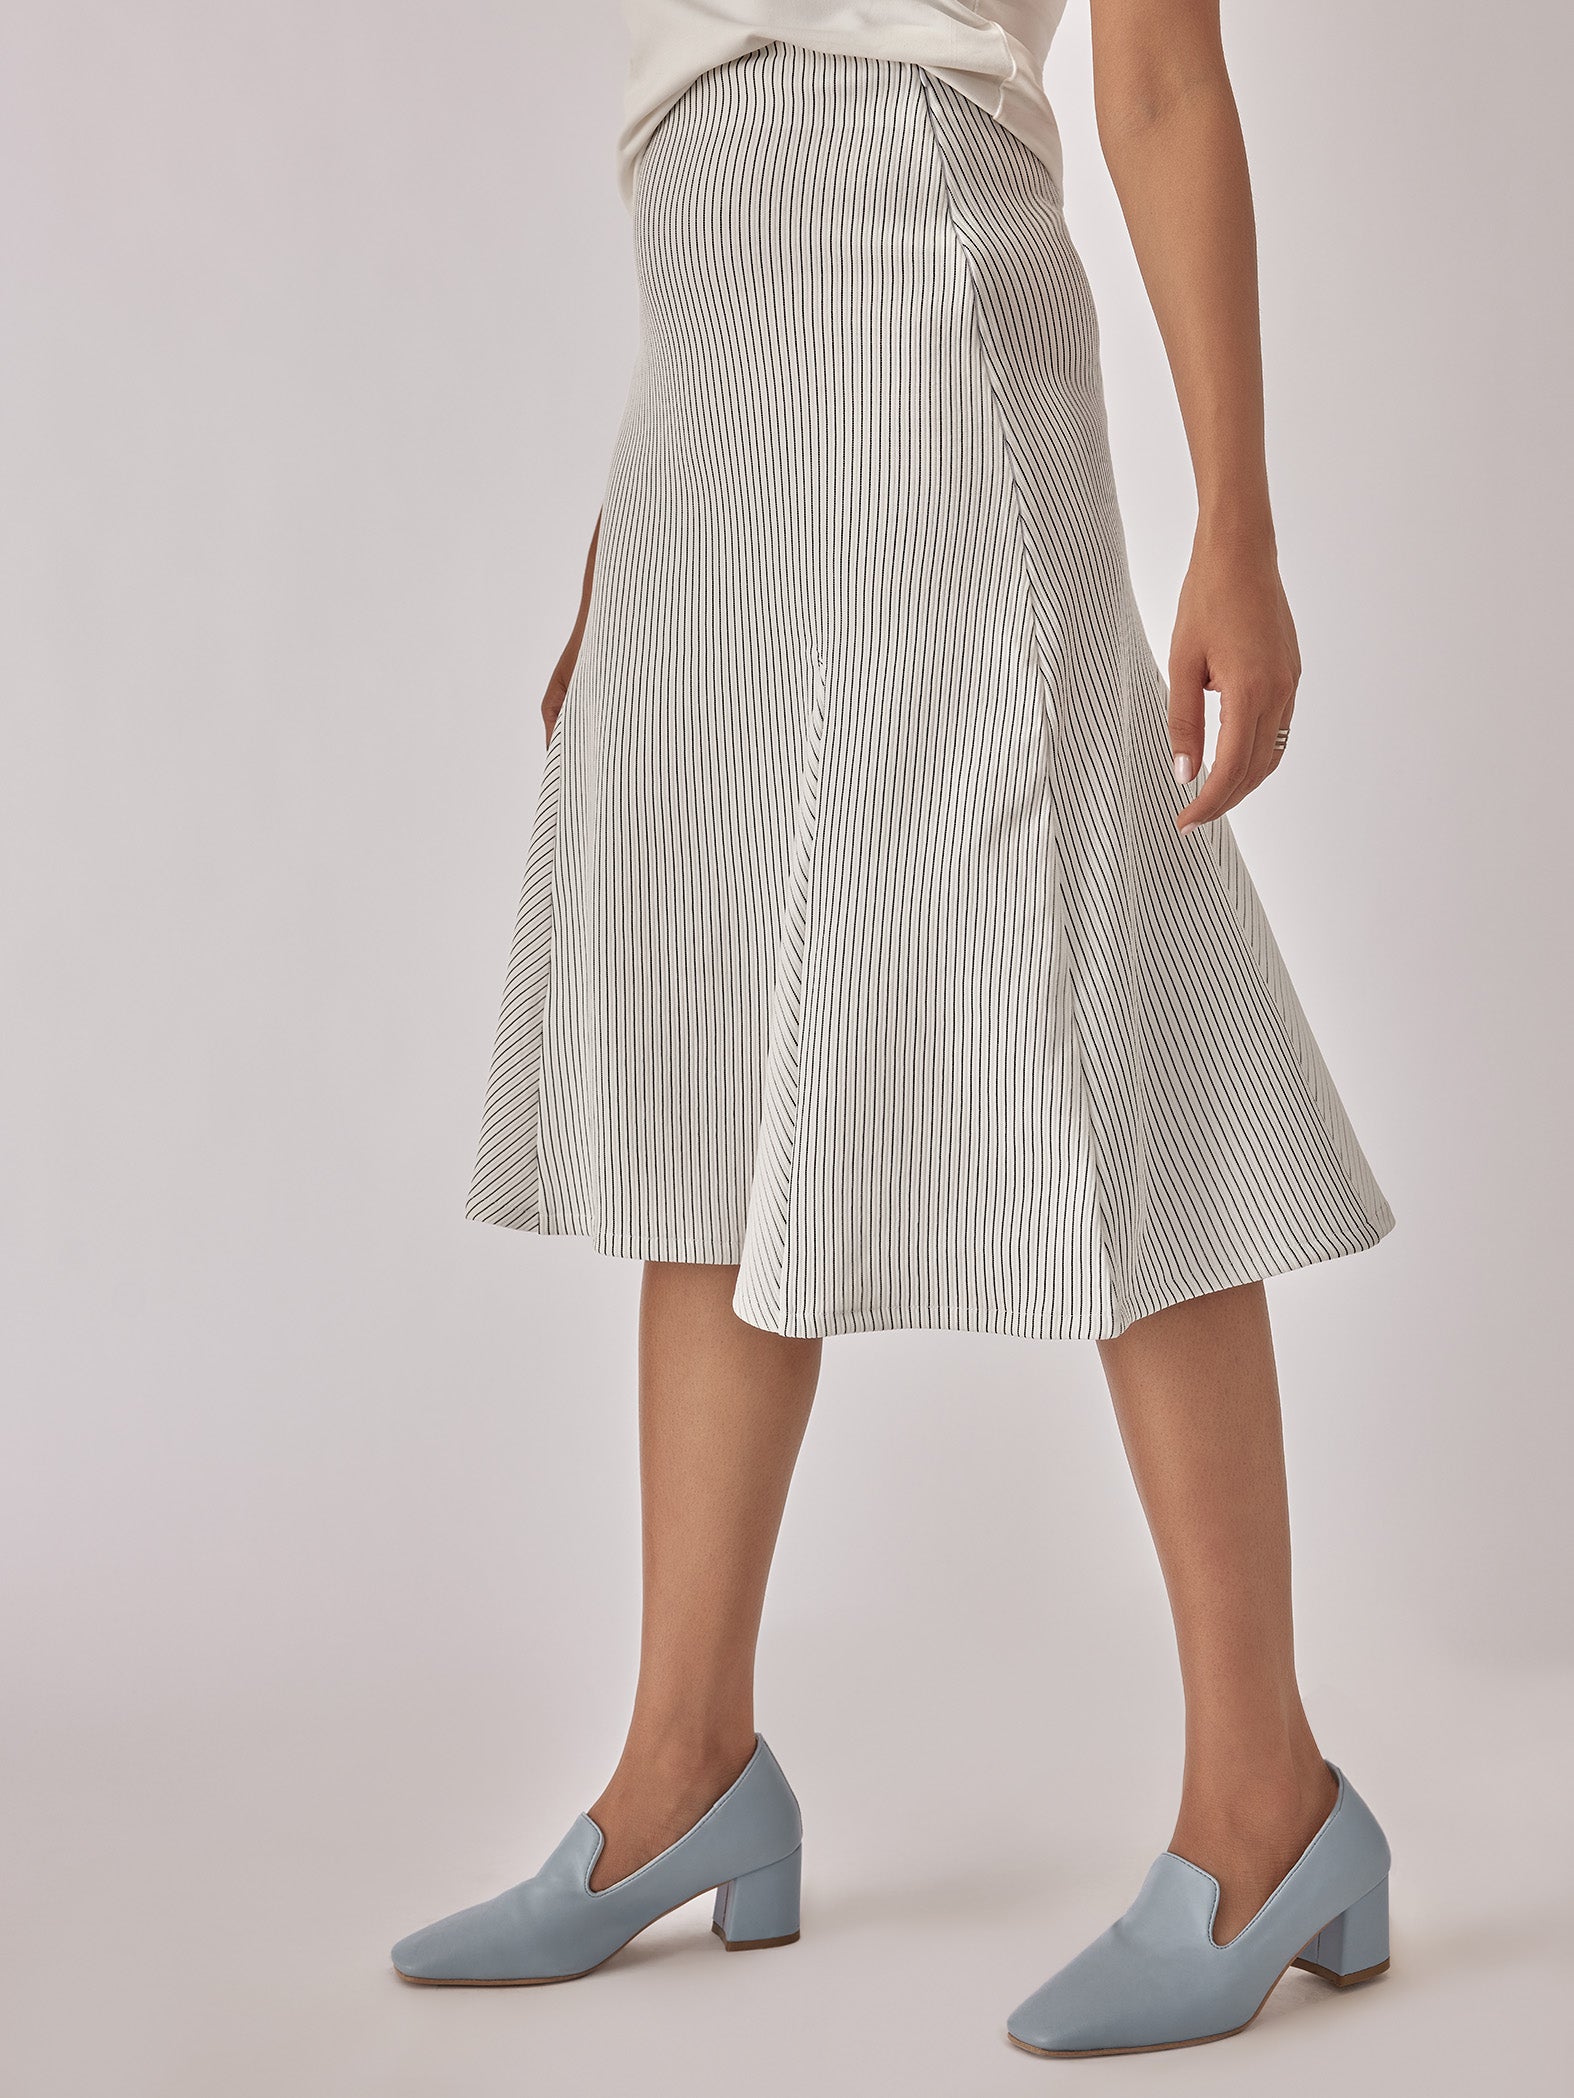 White Godet Panel Skirt